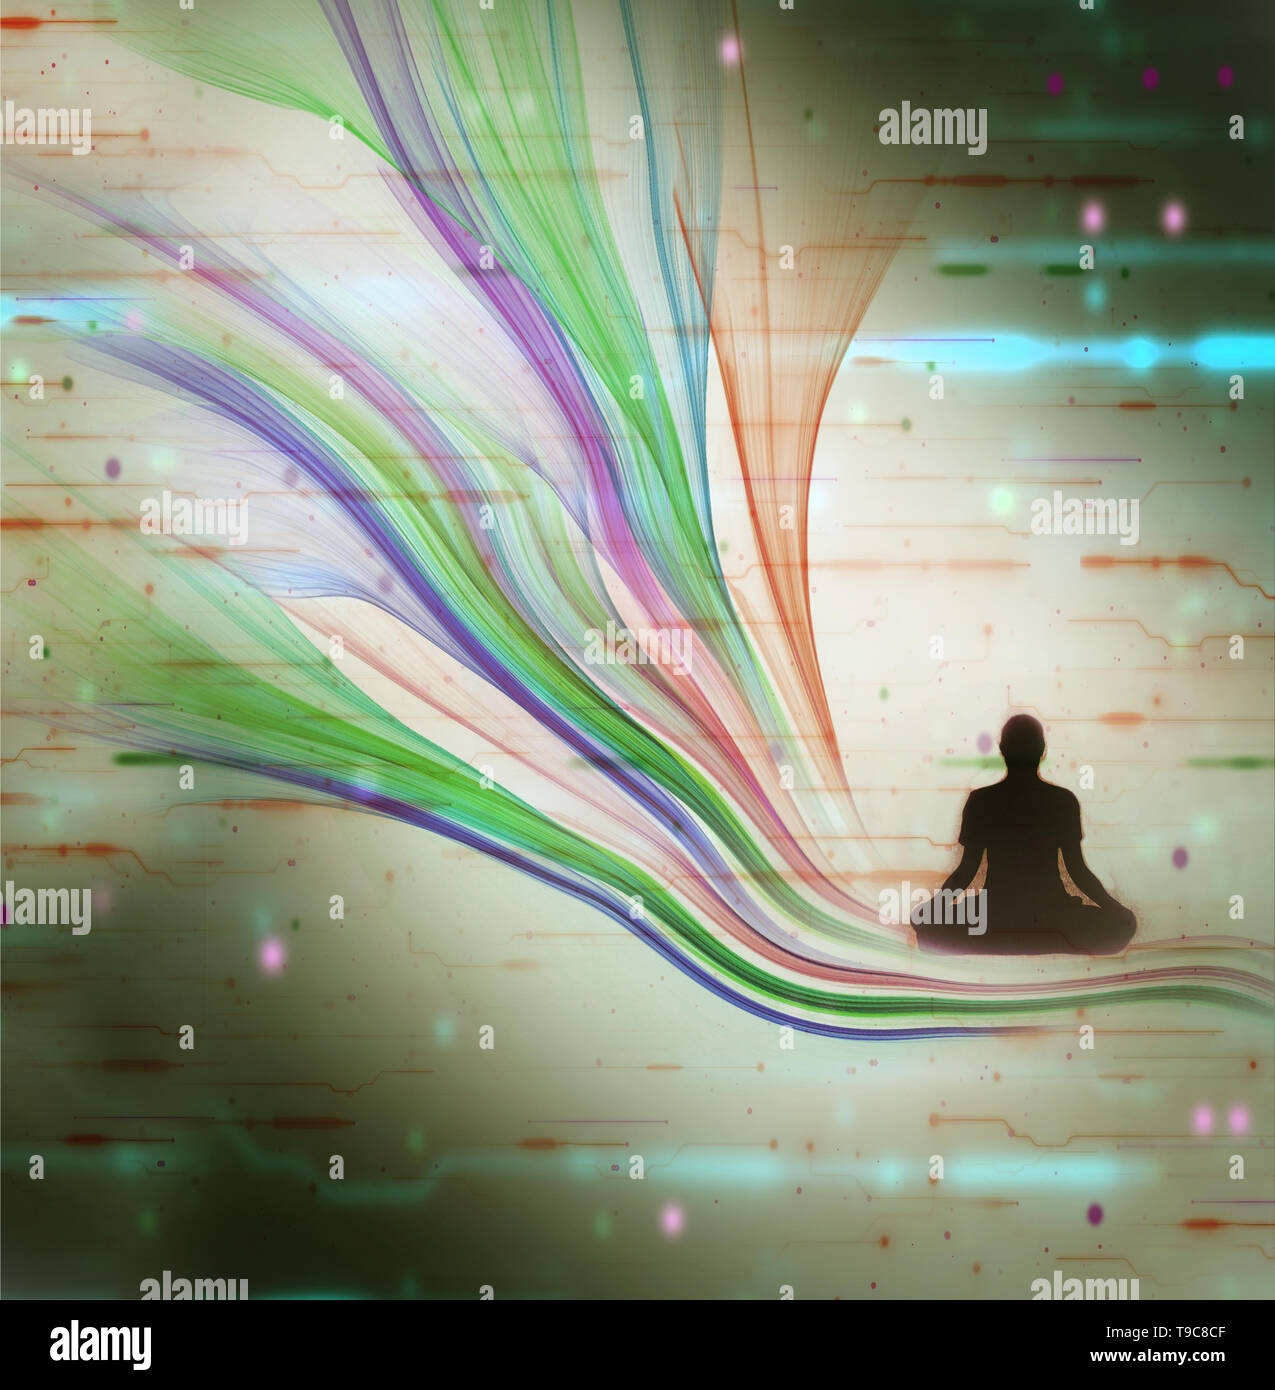 Der Mensch in der Meditation auf swirly Linien vor dem Hintergrund eines elektronisches Rauschen Stockfoto